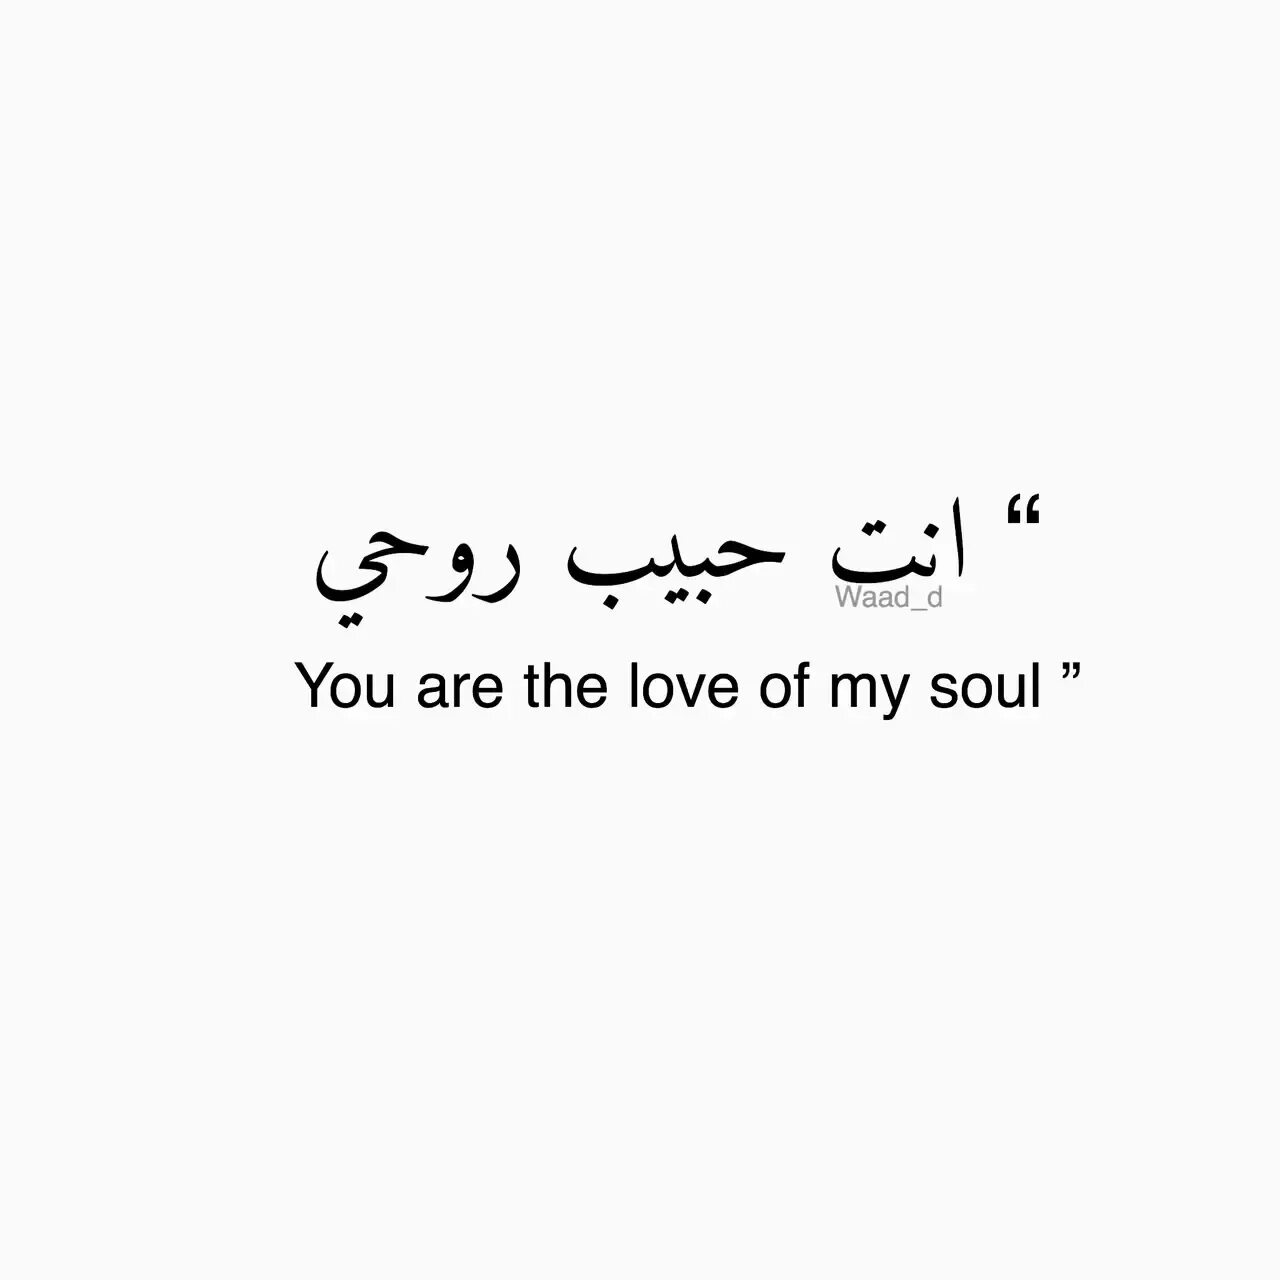 Мое сердце на арабском. Красивые слова на арабском. Красивые фразы на арабском. Арабские фразы на арабском. Красивые надписи на арабском языке.